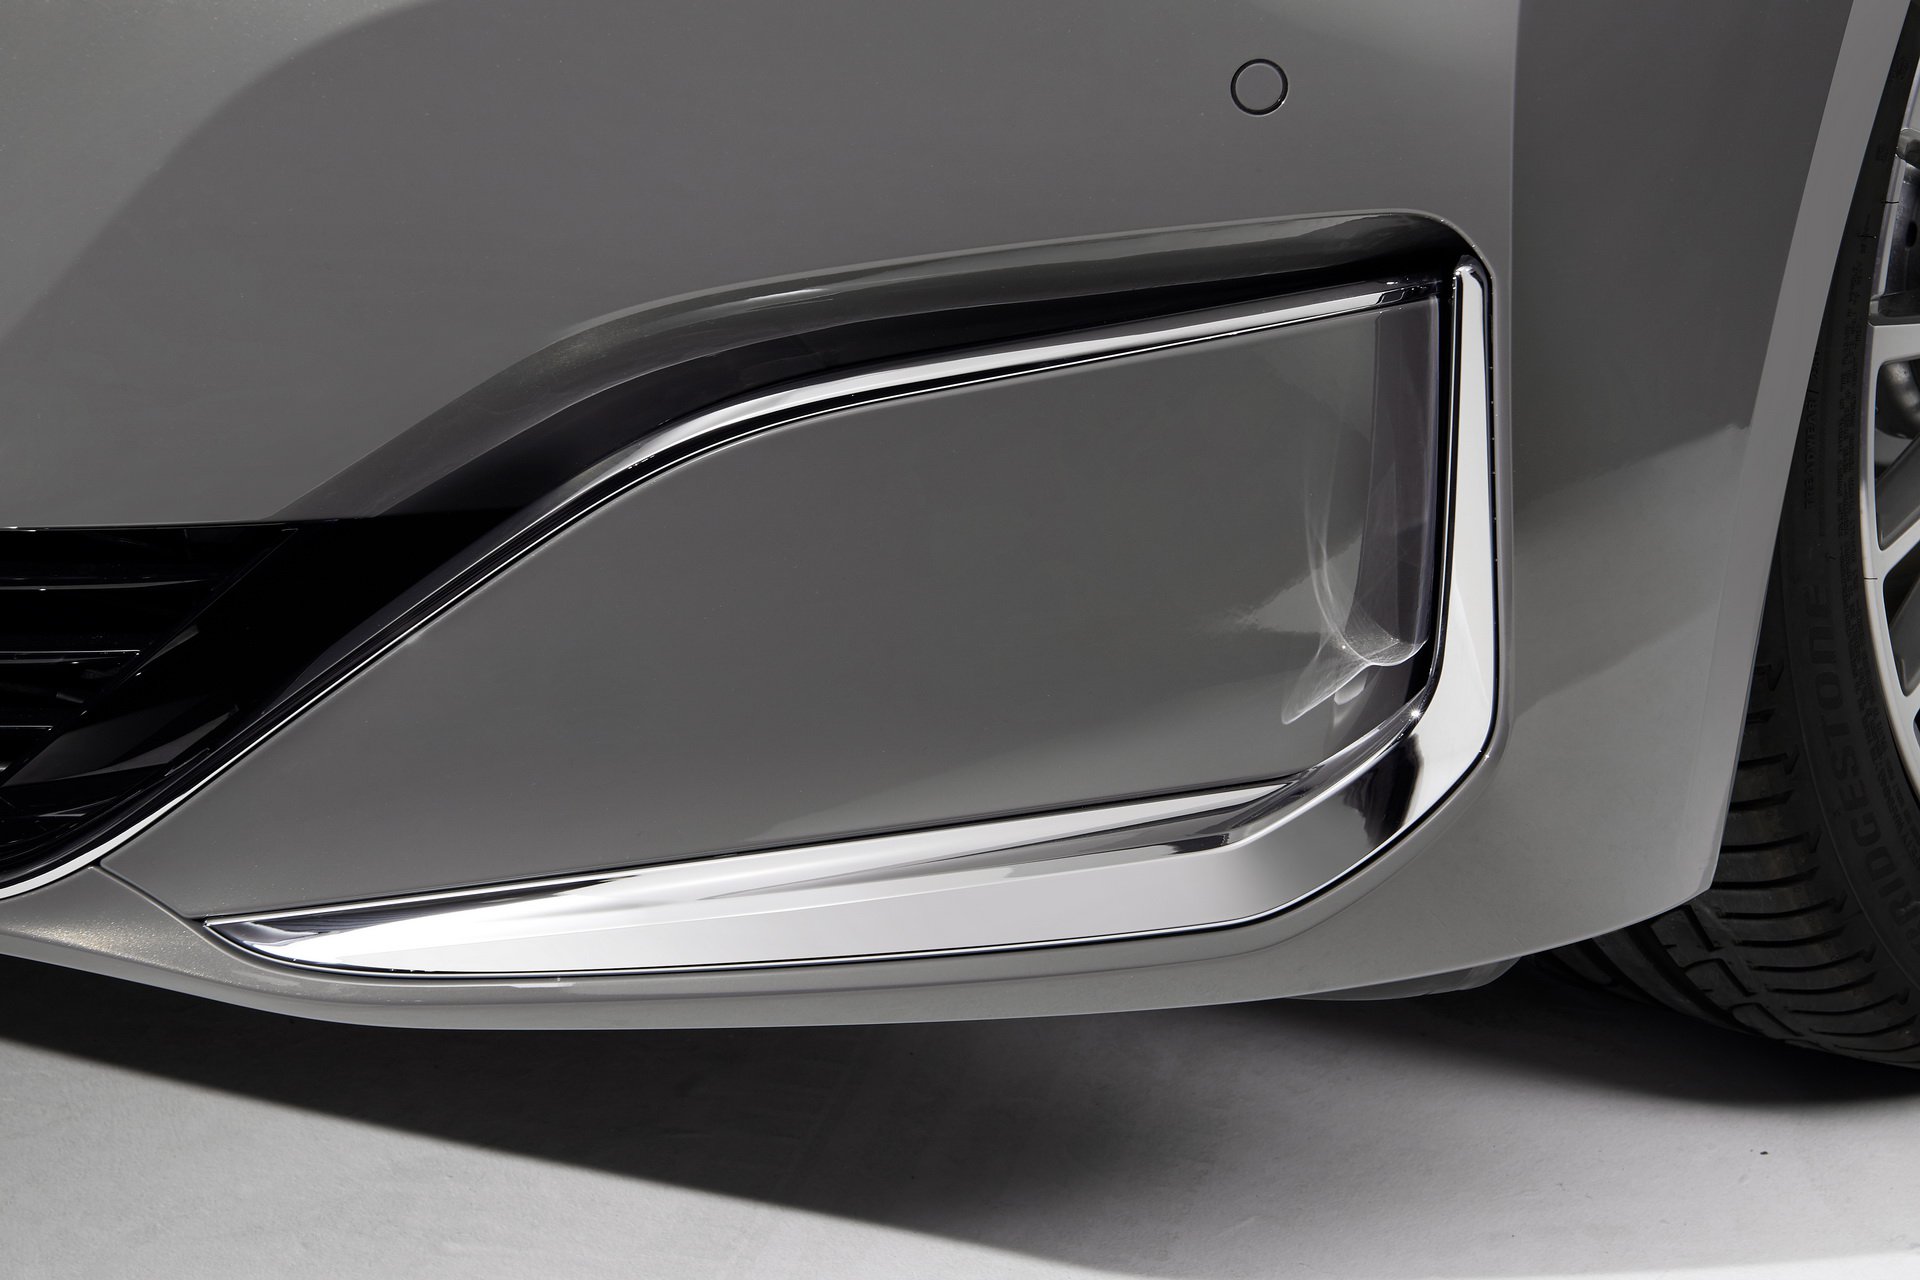 Yeni BMW 7 Serisi tanıtıldı: Yeni tasarım, yeni motorlar ve daha fazlası